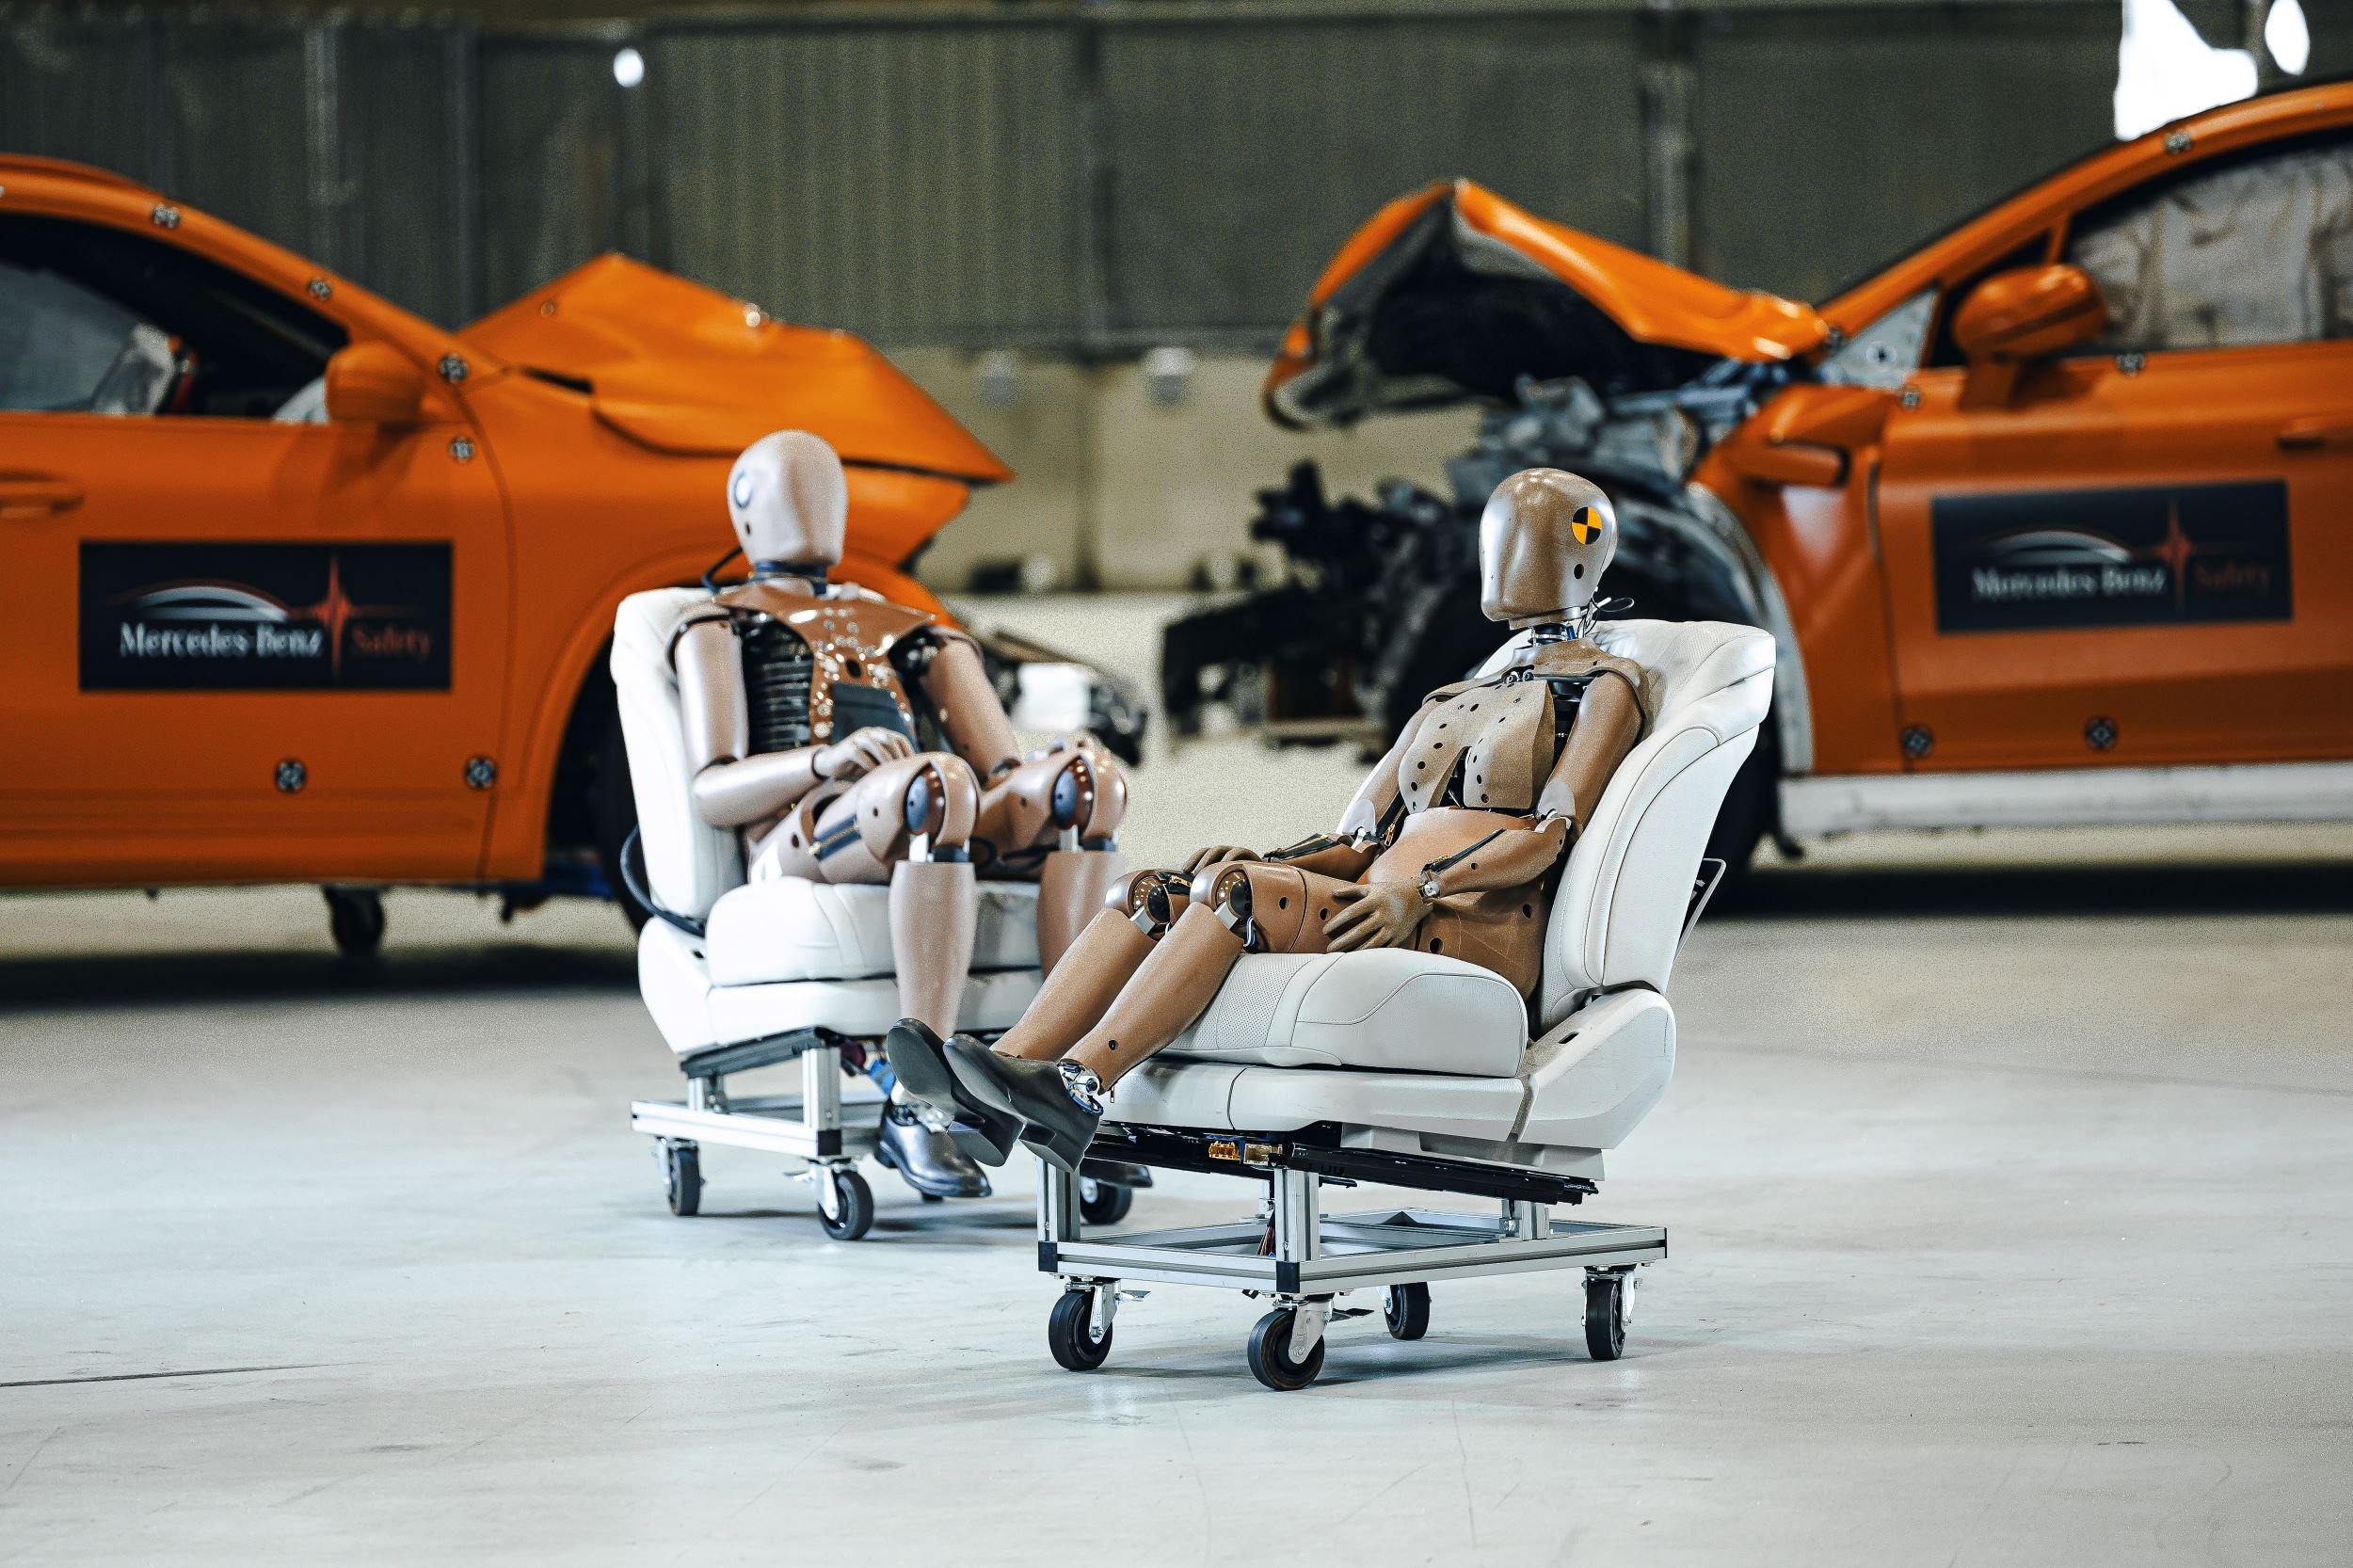 Τα crash test dummies γένους θηλυκού από τη Mercedes-Benz